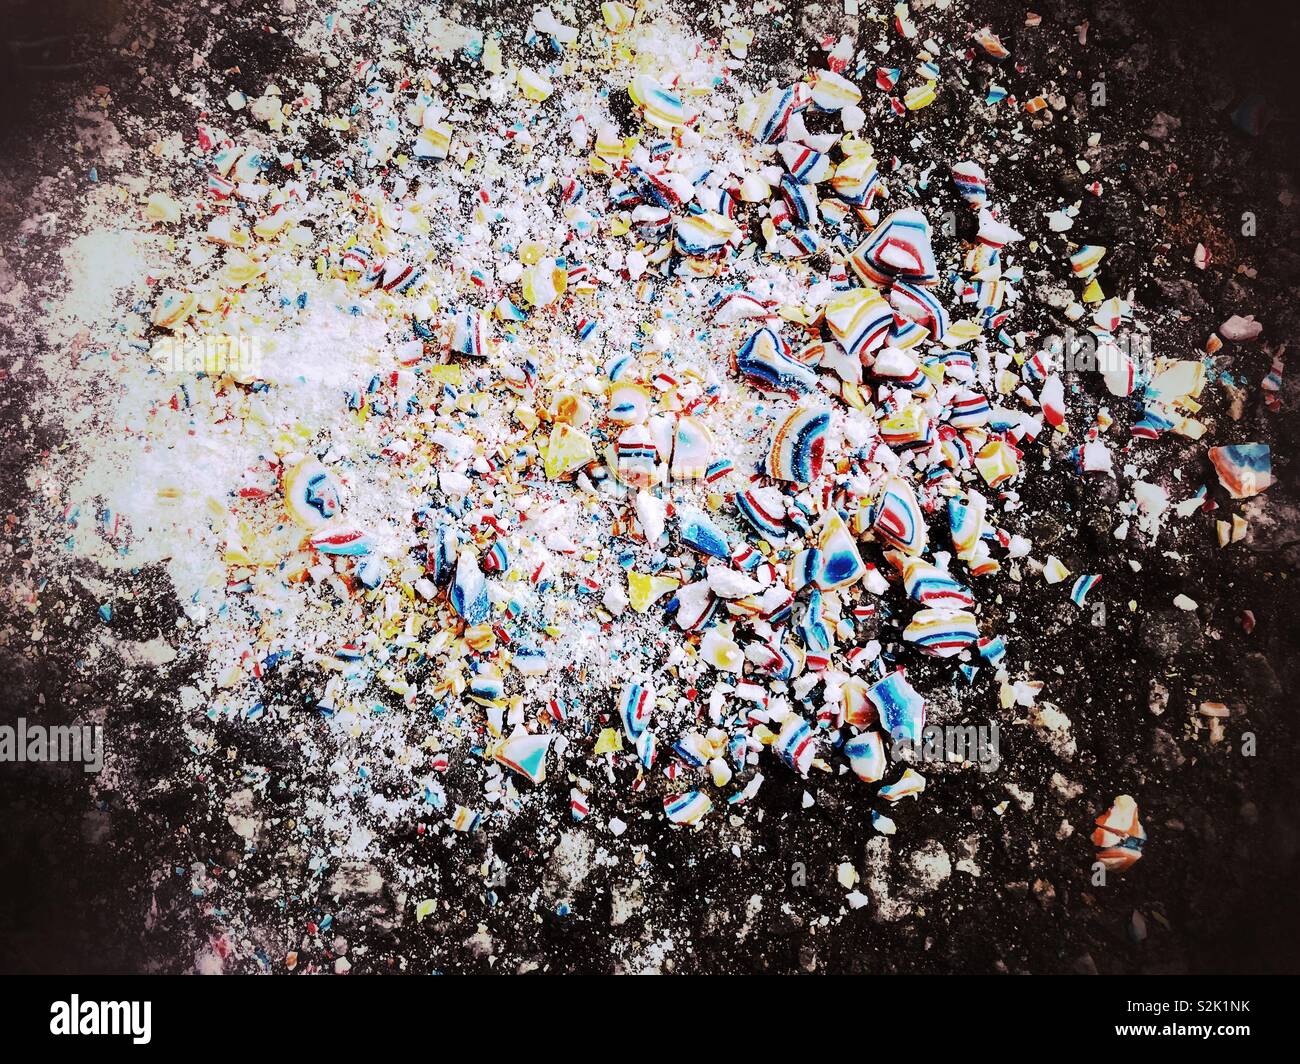 Jawbreaker sur trottoir, broyée en morceaux colorés Banque D'Images